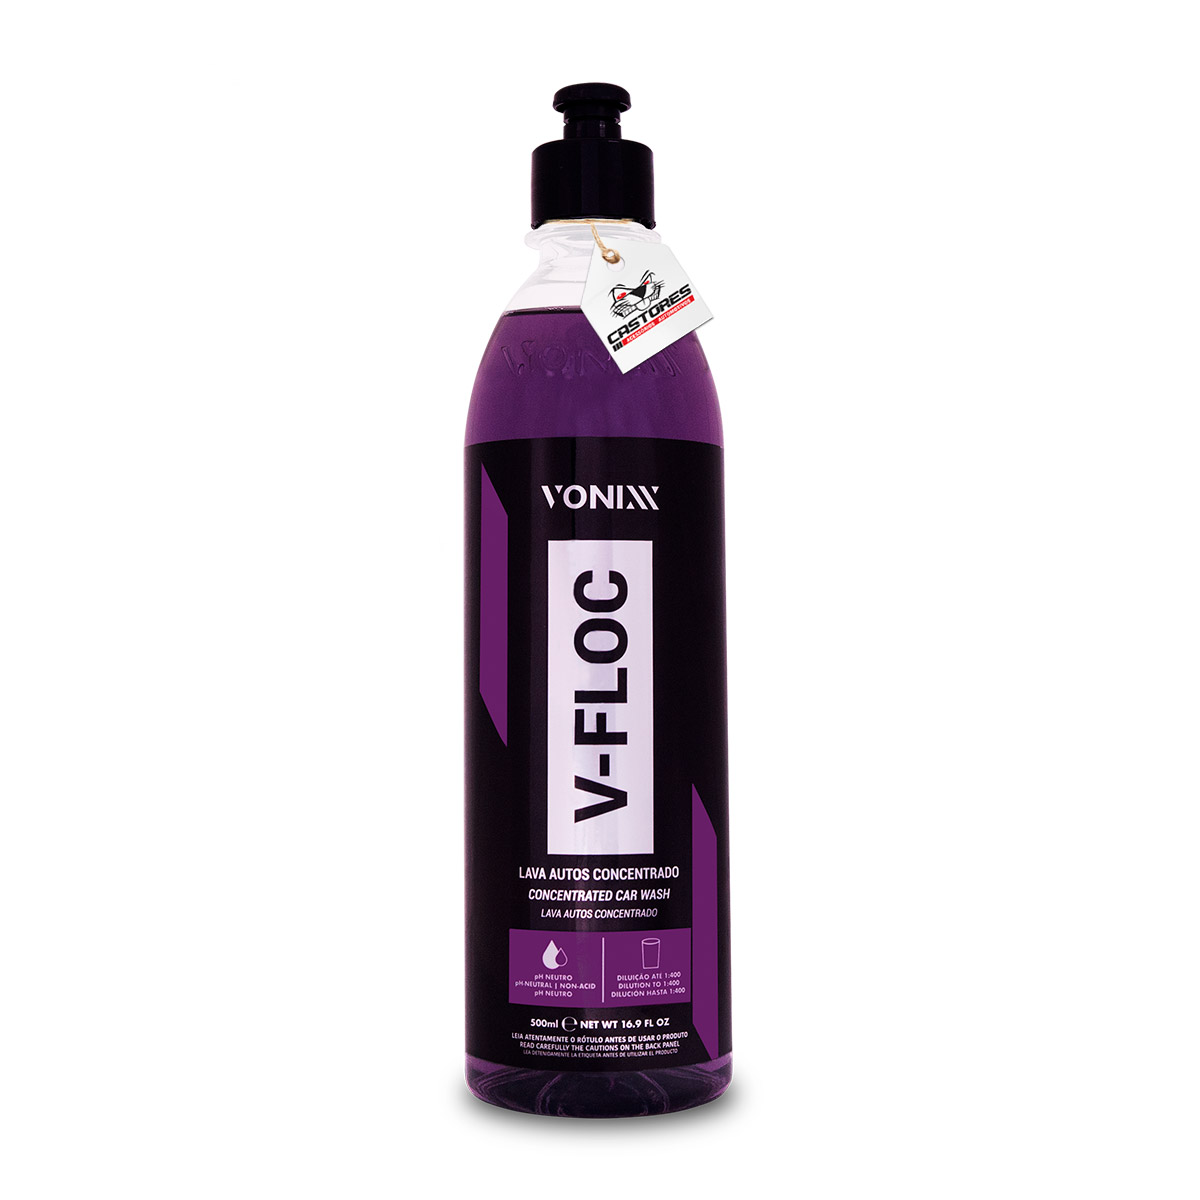 V-floc Vonixx Lava Auto Shampoo Super Concentrado 500ml